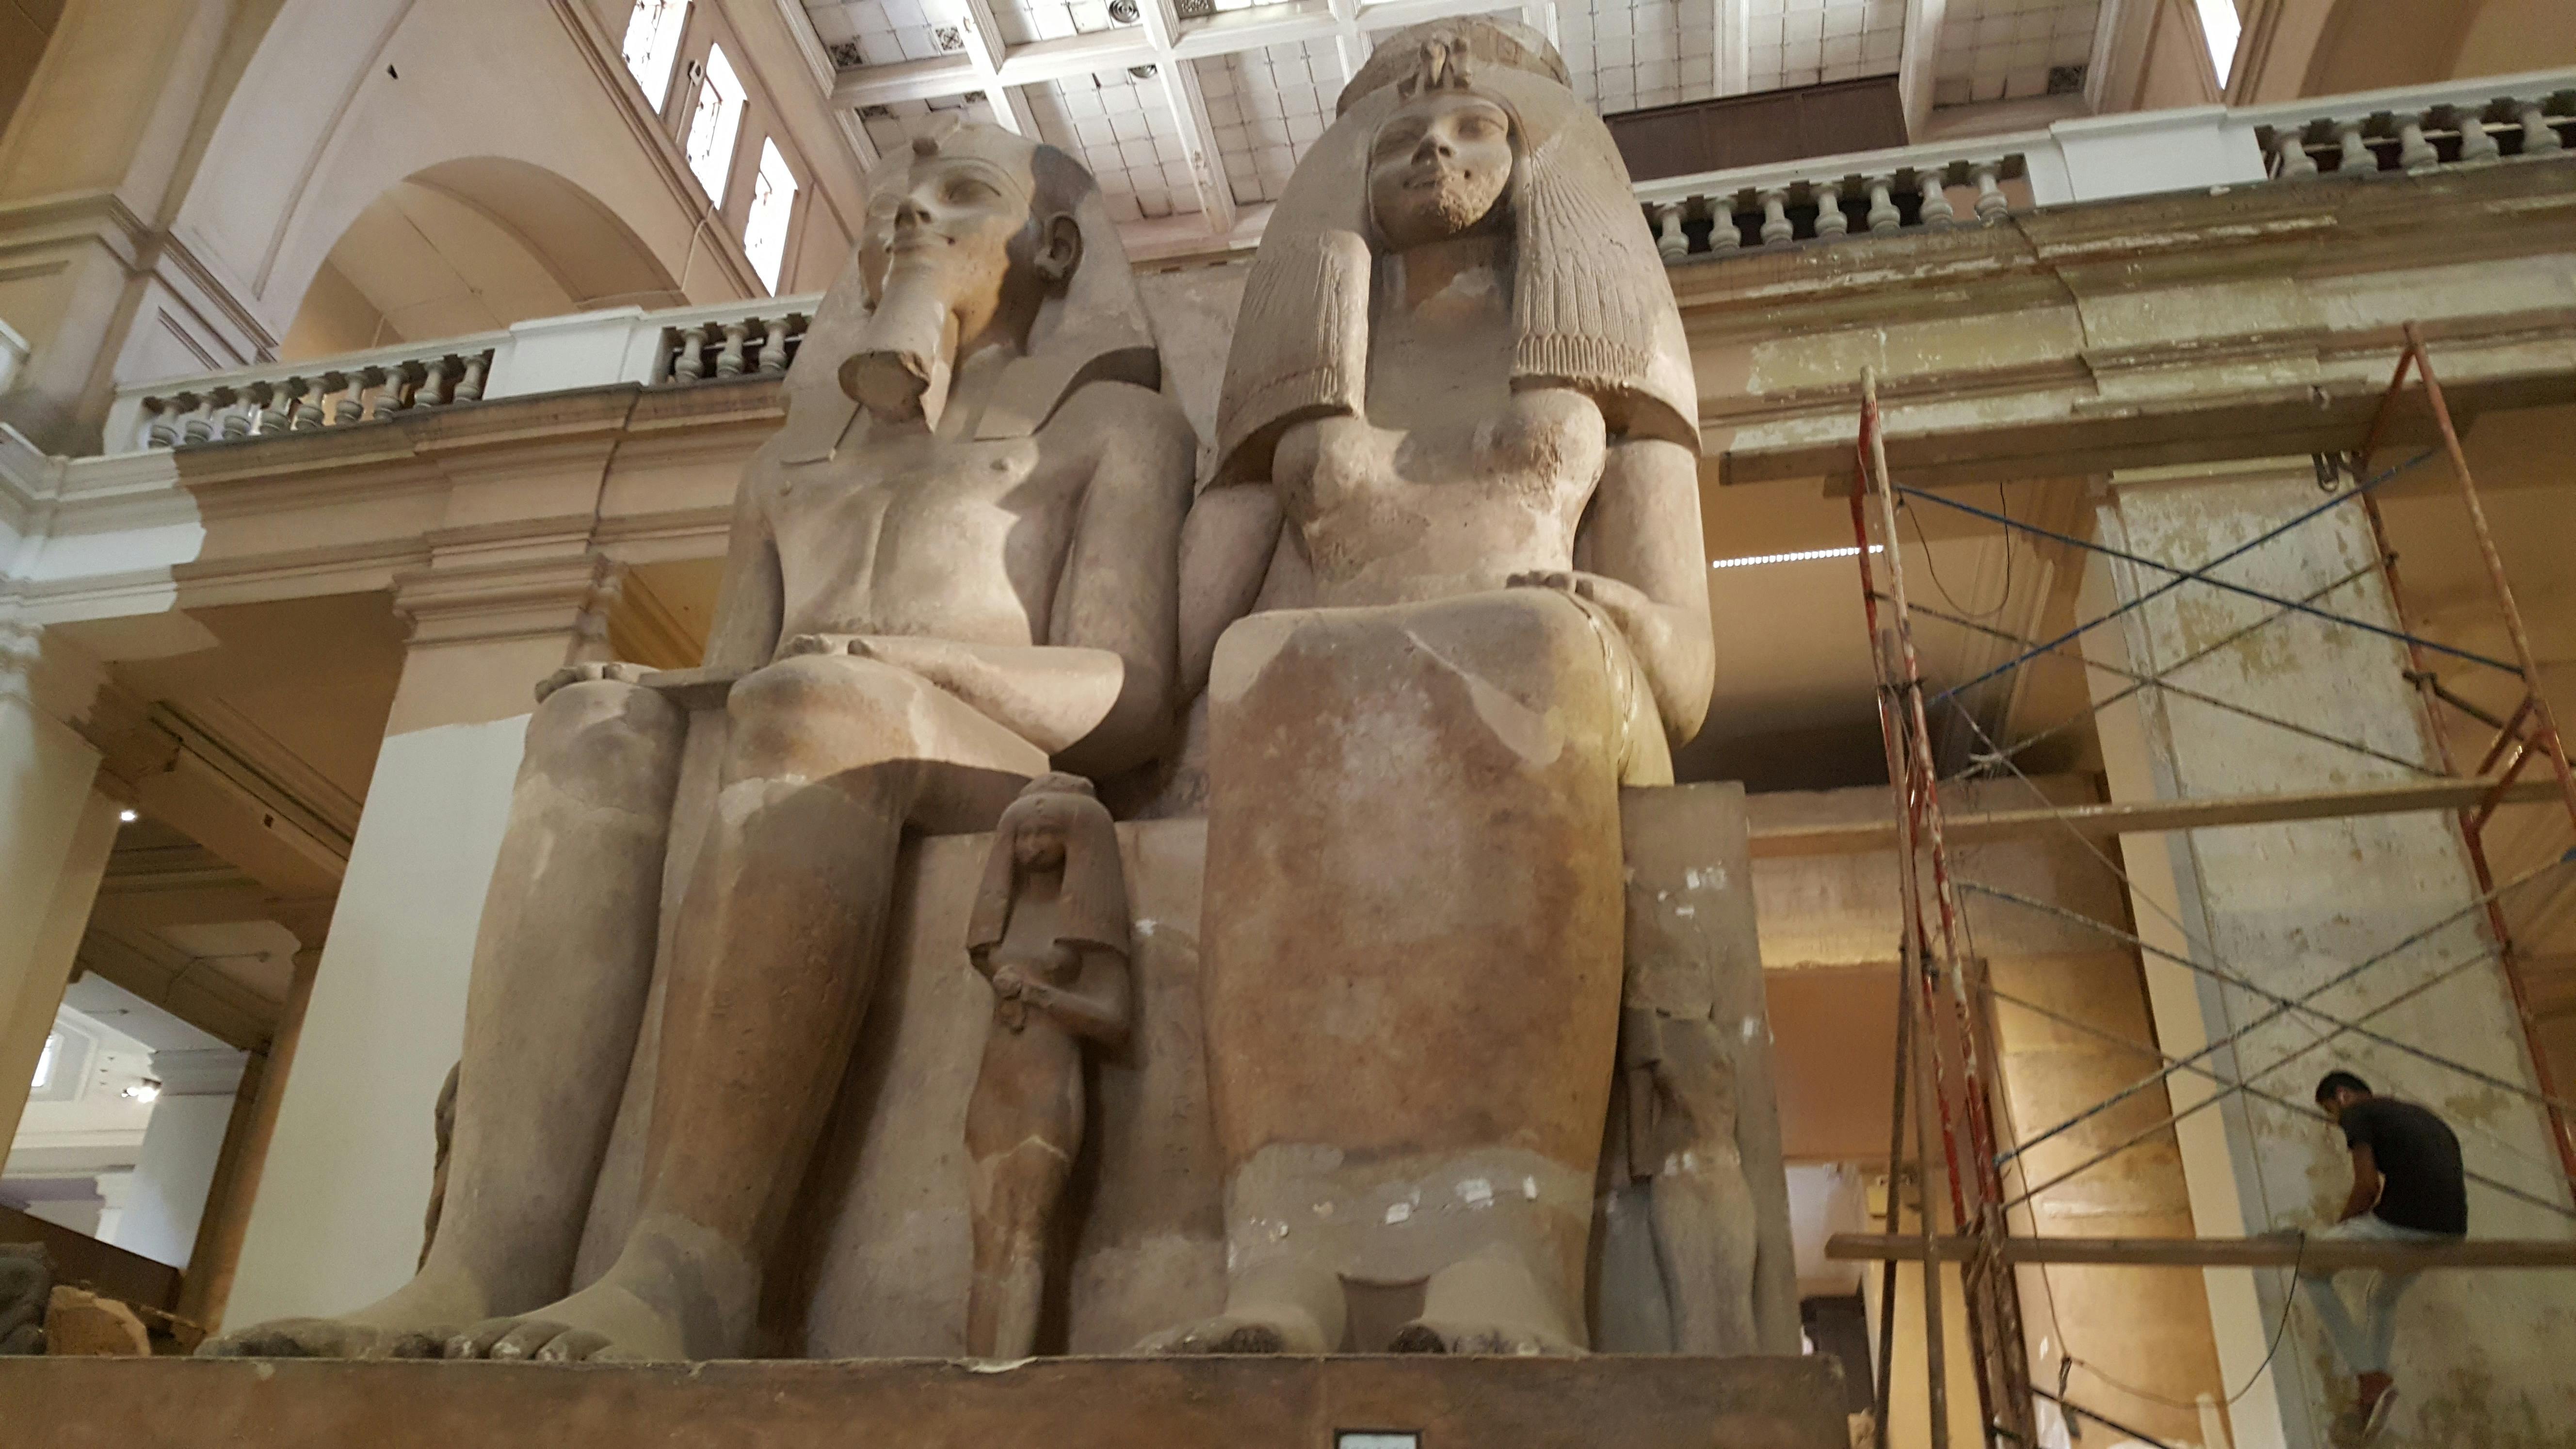 Día completo el museo egipcio y la aldea faraónica.